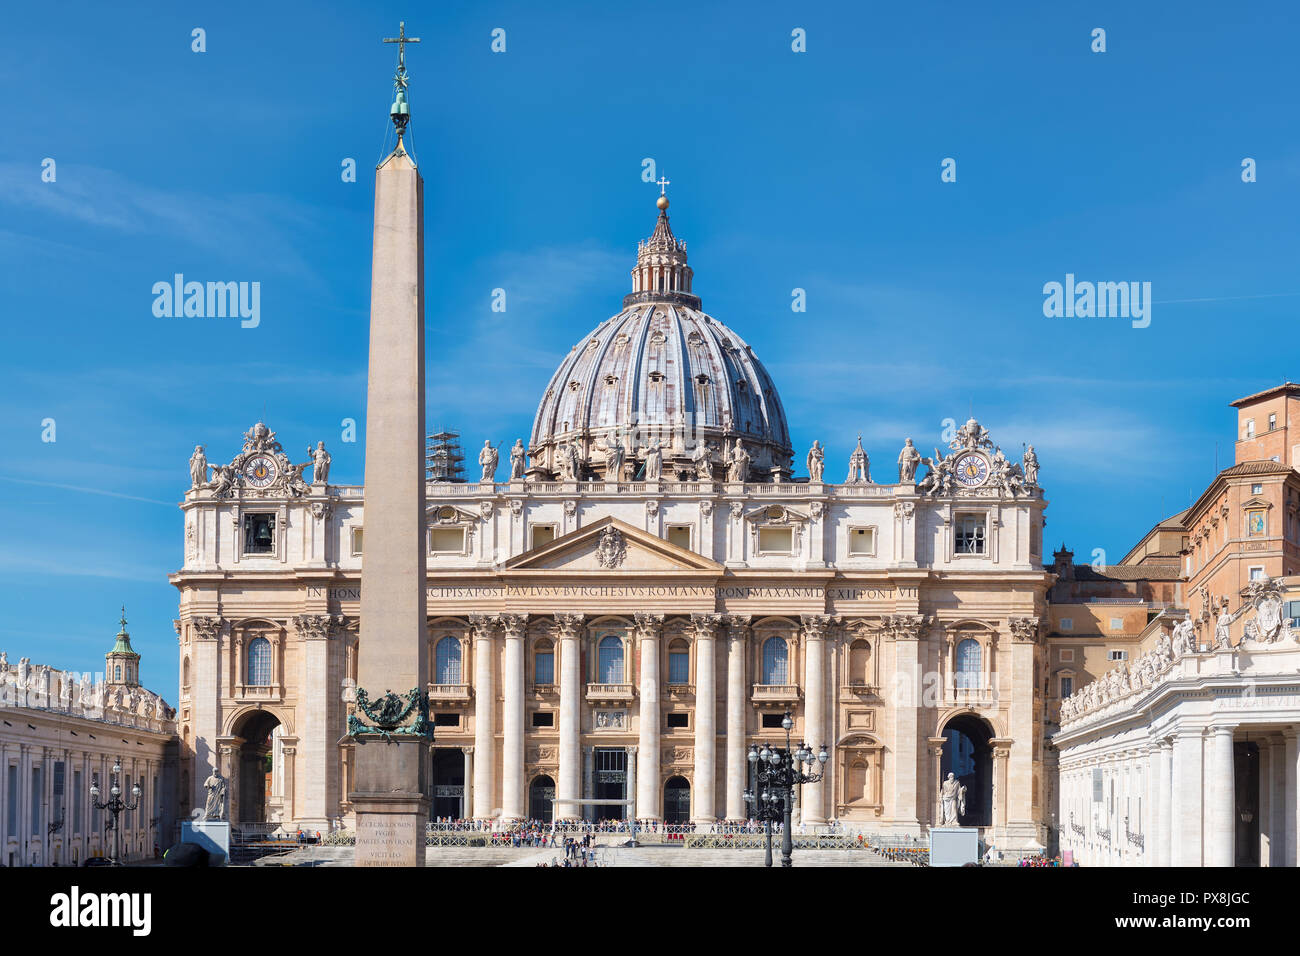 La cathédrale Saint-Pierre sur la place Saint Pierre au Vatican, Rome, Italie Banque D'Images